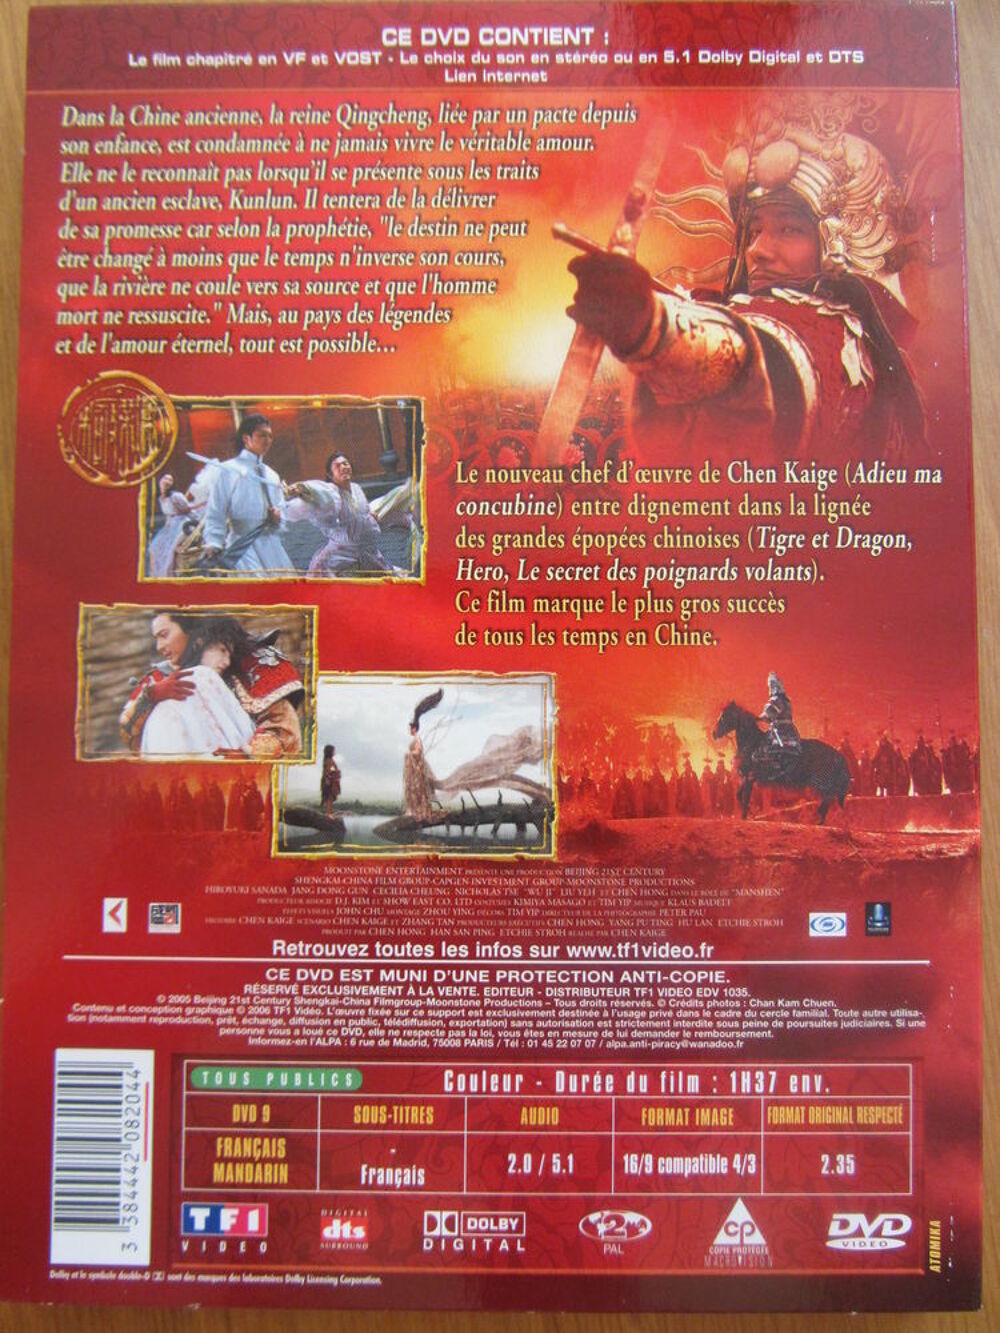 WU JI, la l&eacute;gende des Cavaliers du Vent - de Chen KAIGE DVD et blu-ray